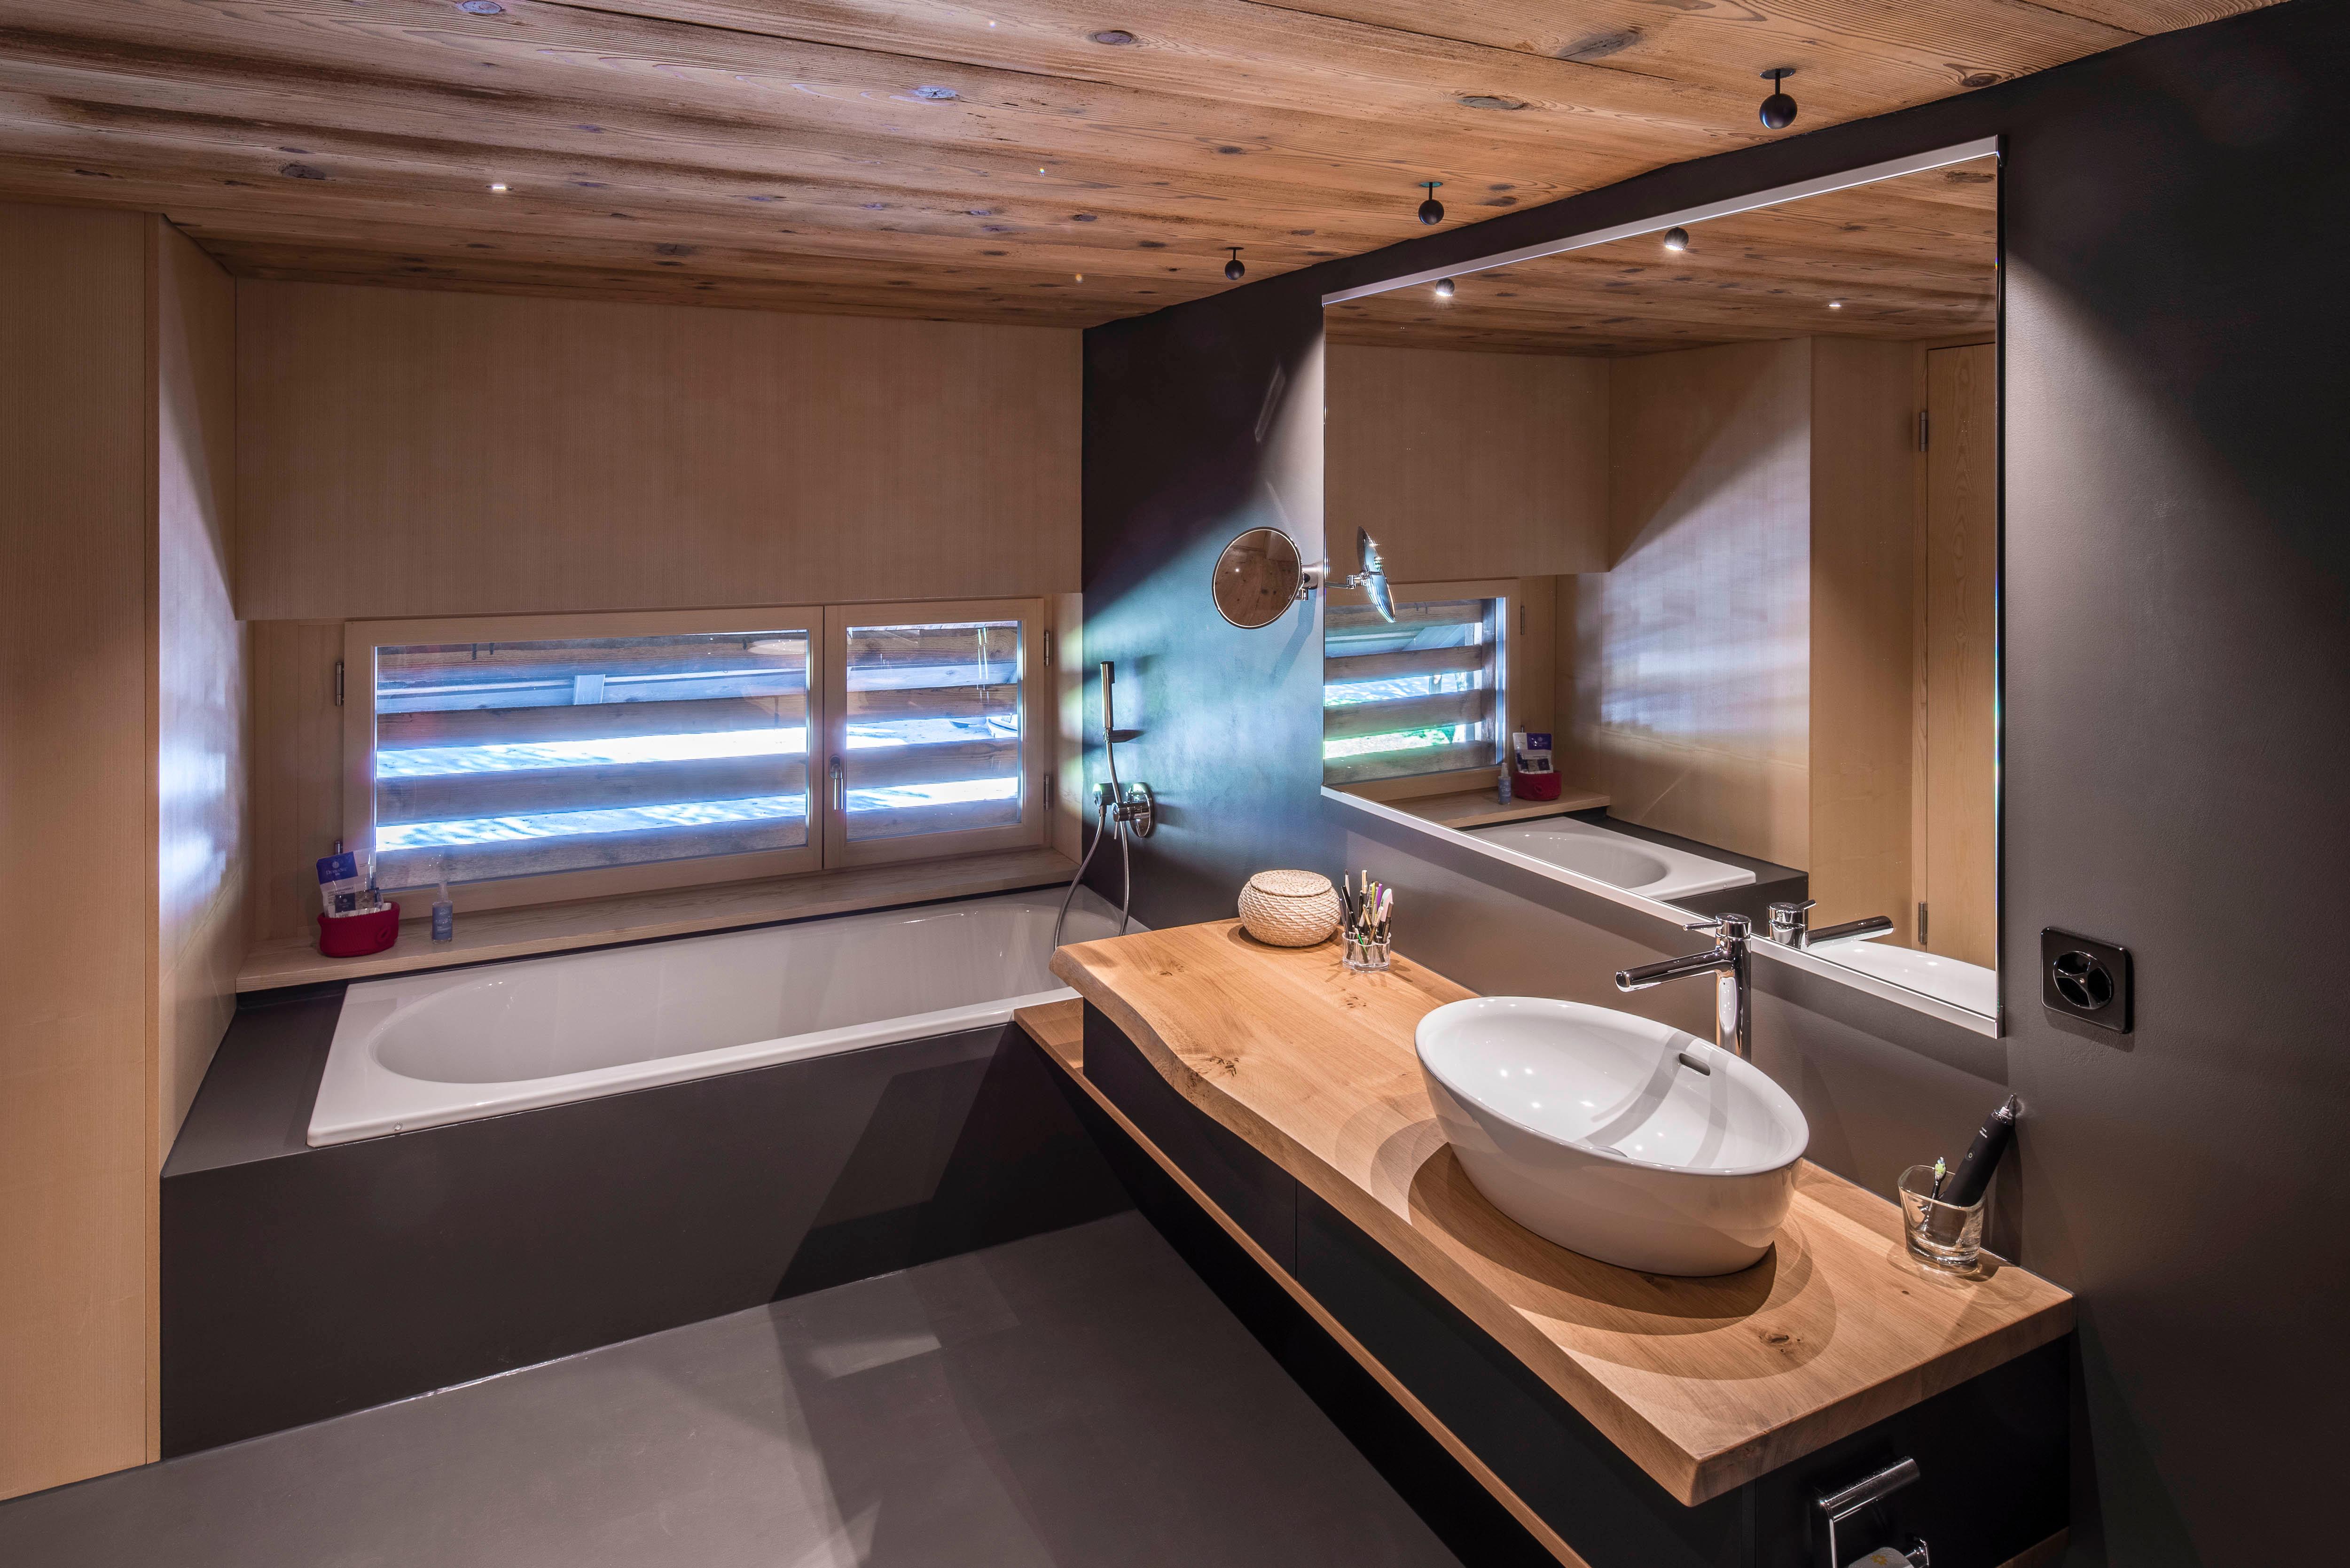 Architektur-Reportage Oppligen: grosses und luxuriöses Bad mit Holzelementen